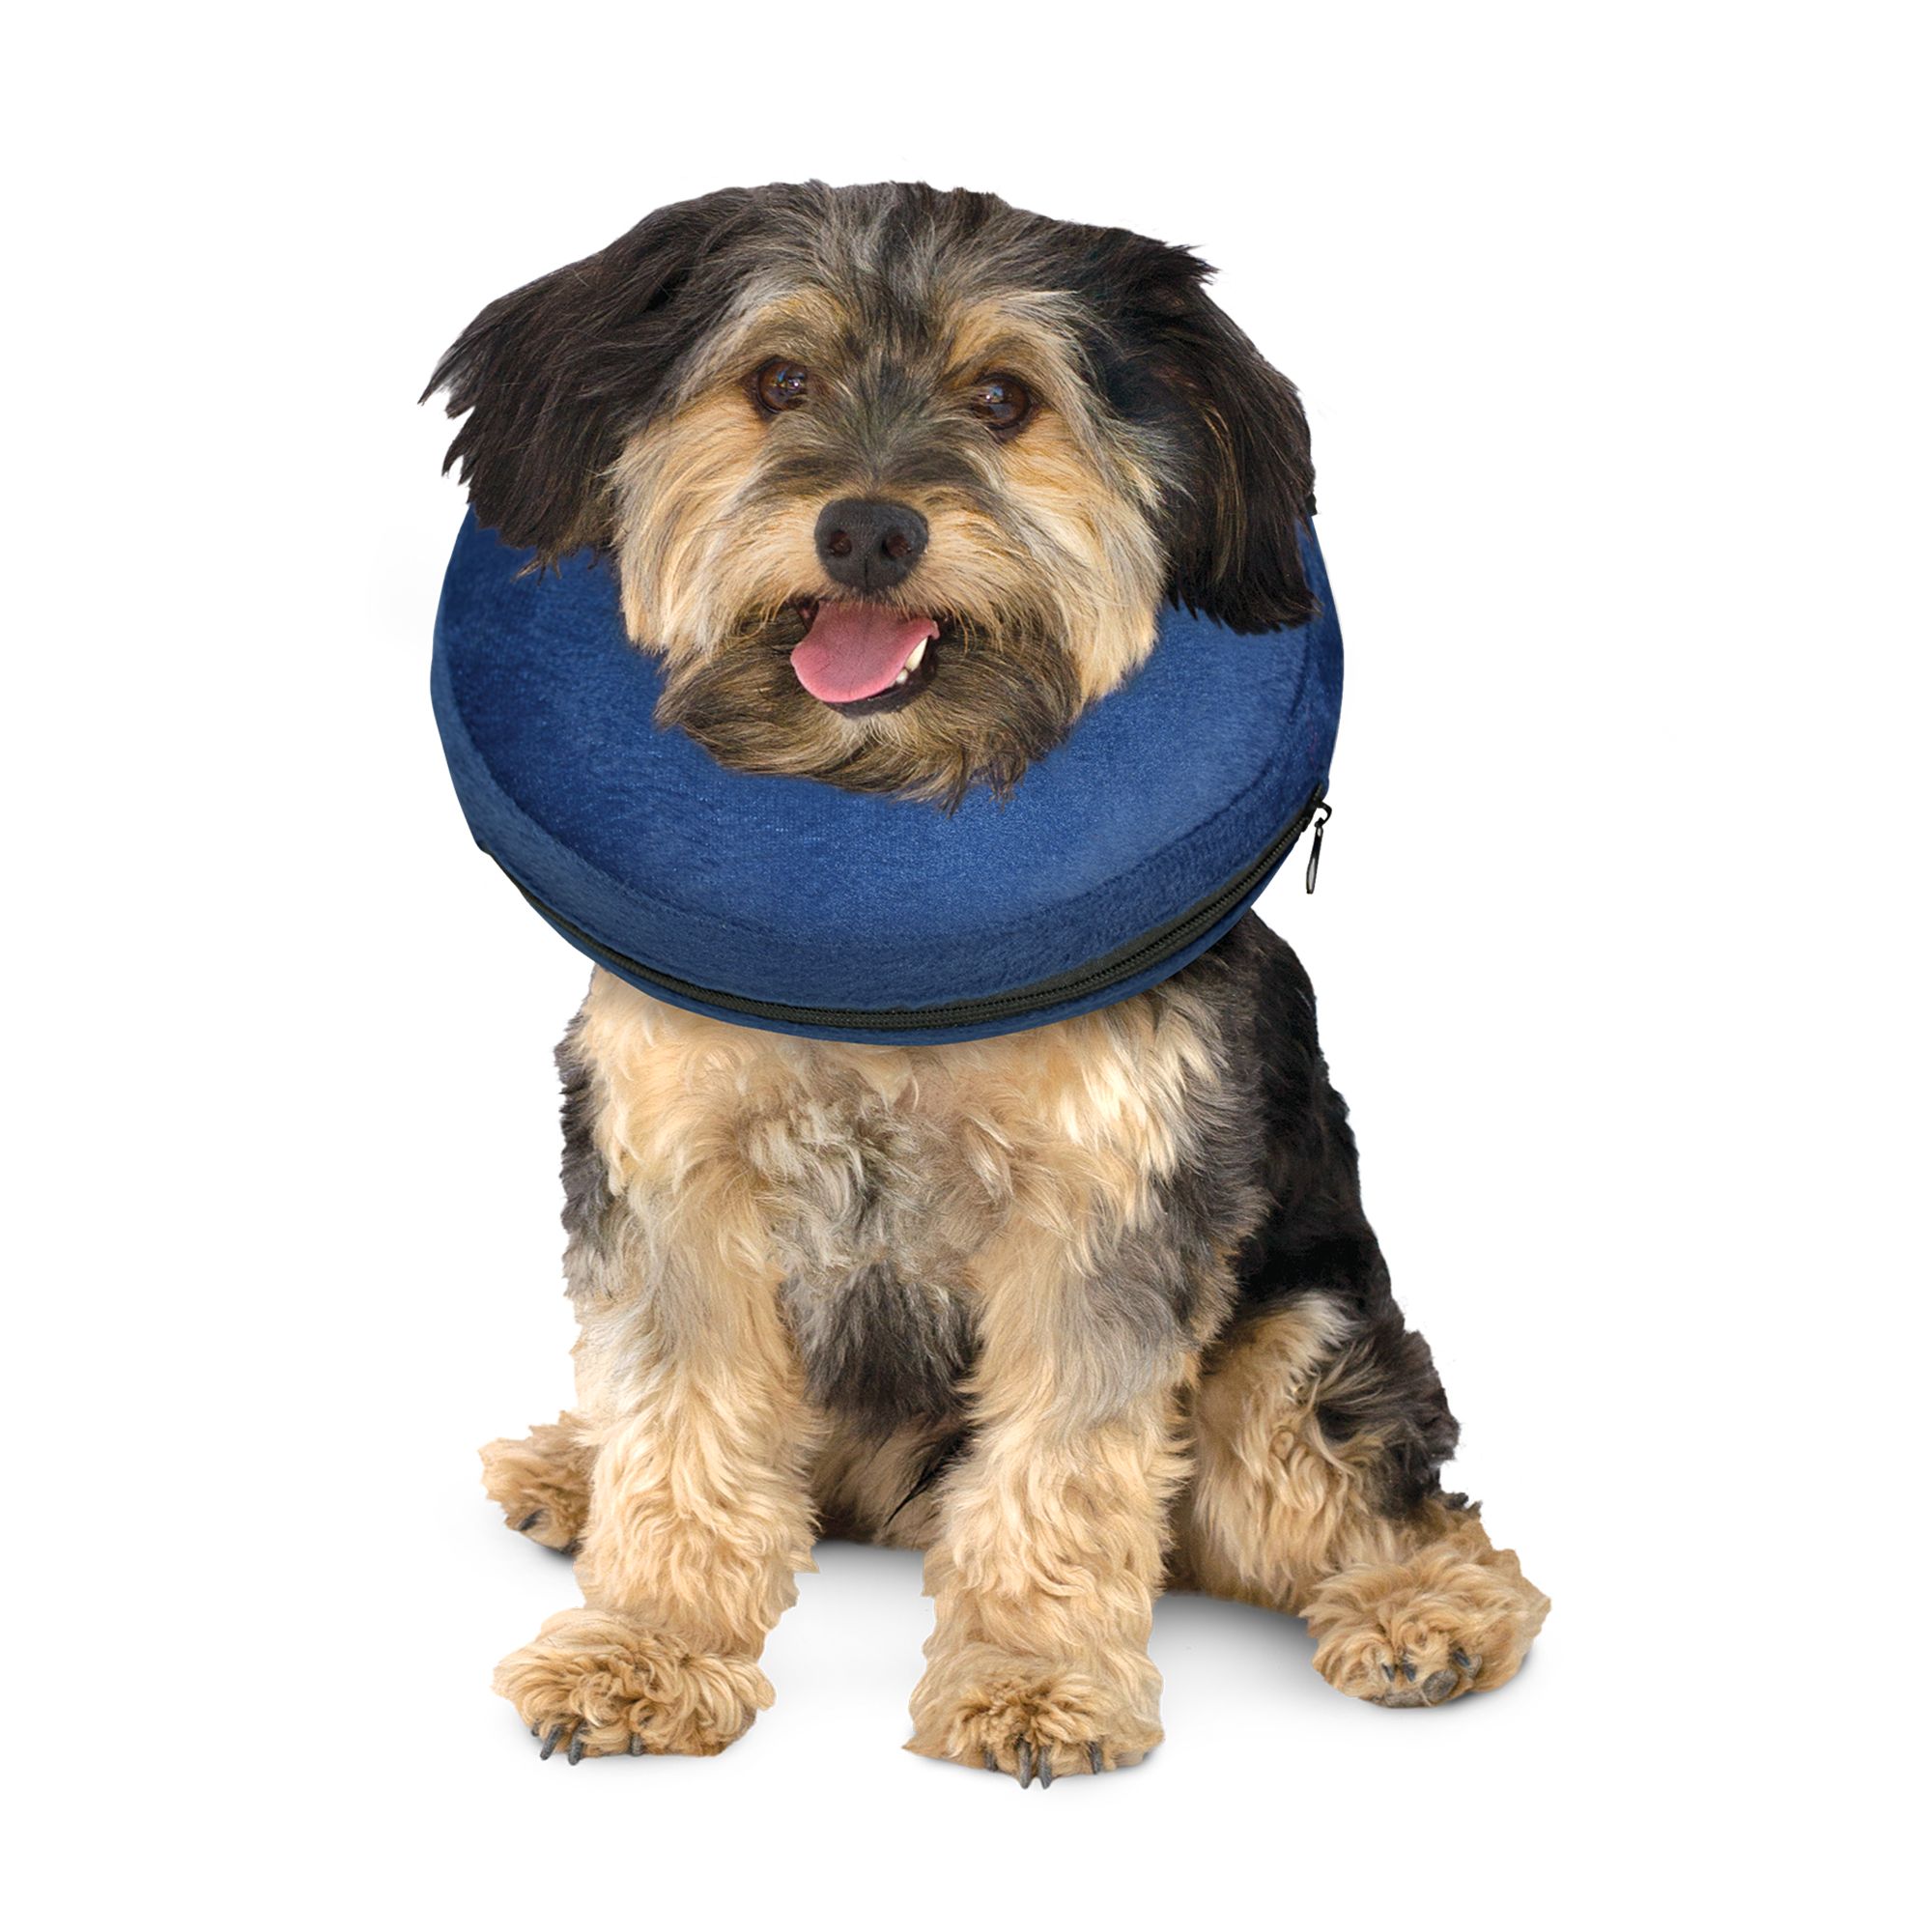 petsmart dog bandage